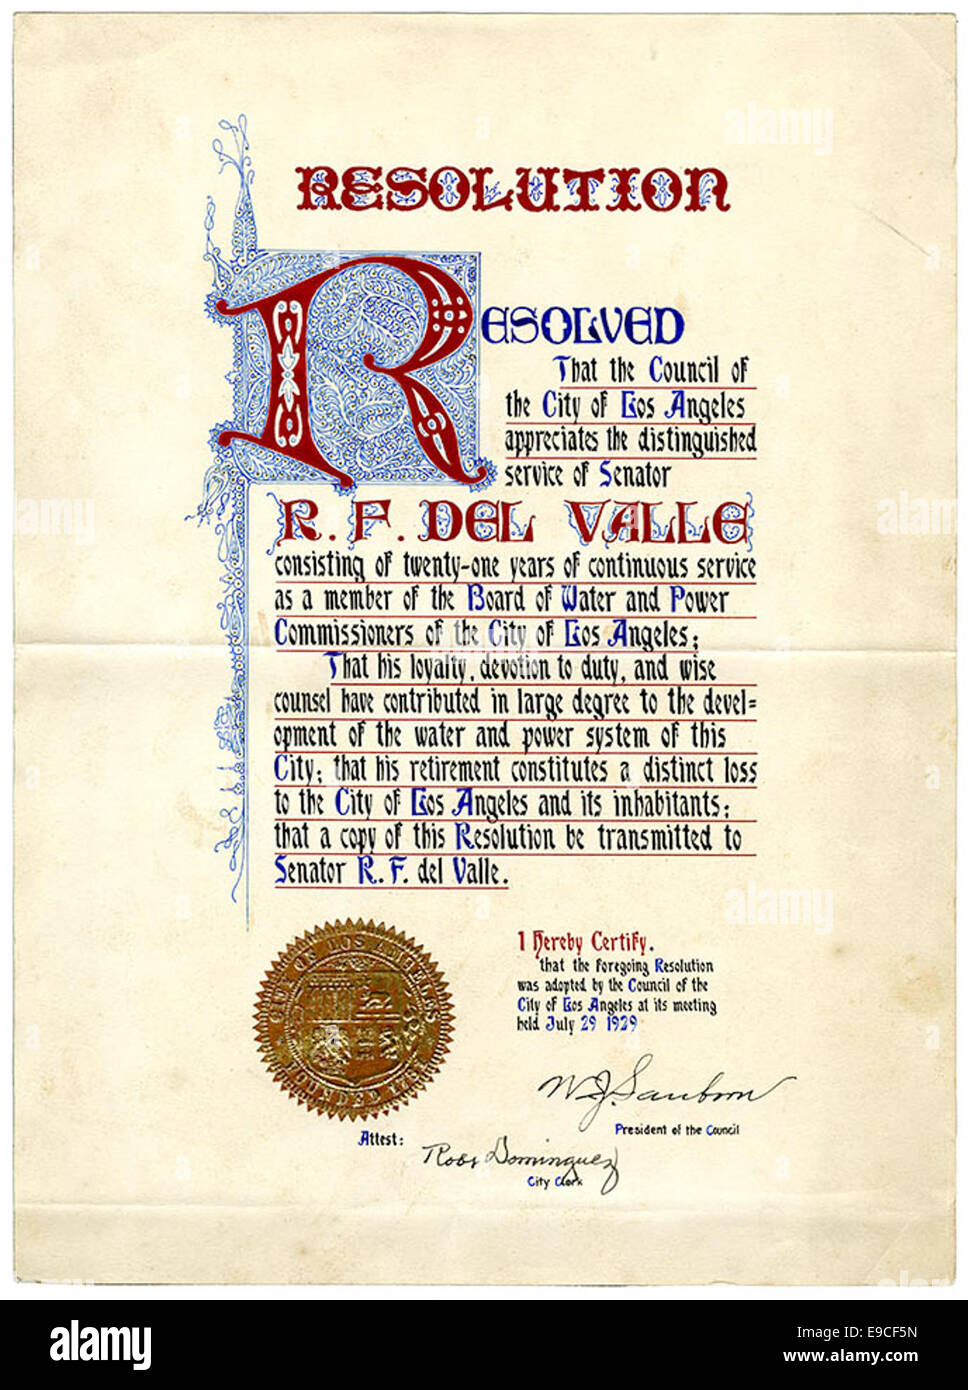 Résolution. Résolu que le Conseil de la ville de Los Angeles apprécie le prix de service du sénateur R. F. del Valle... Banque D'Images